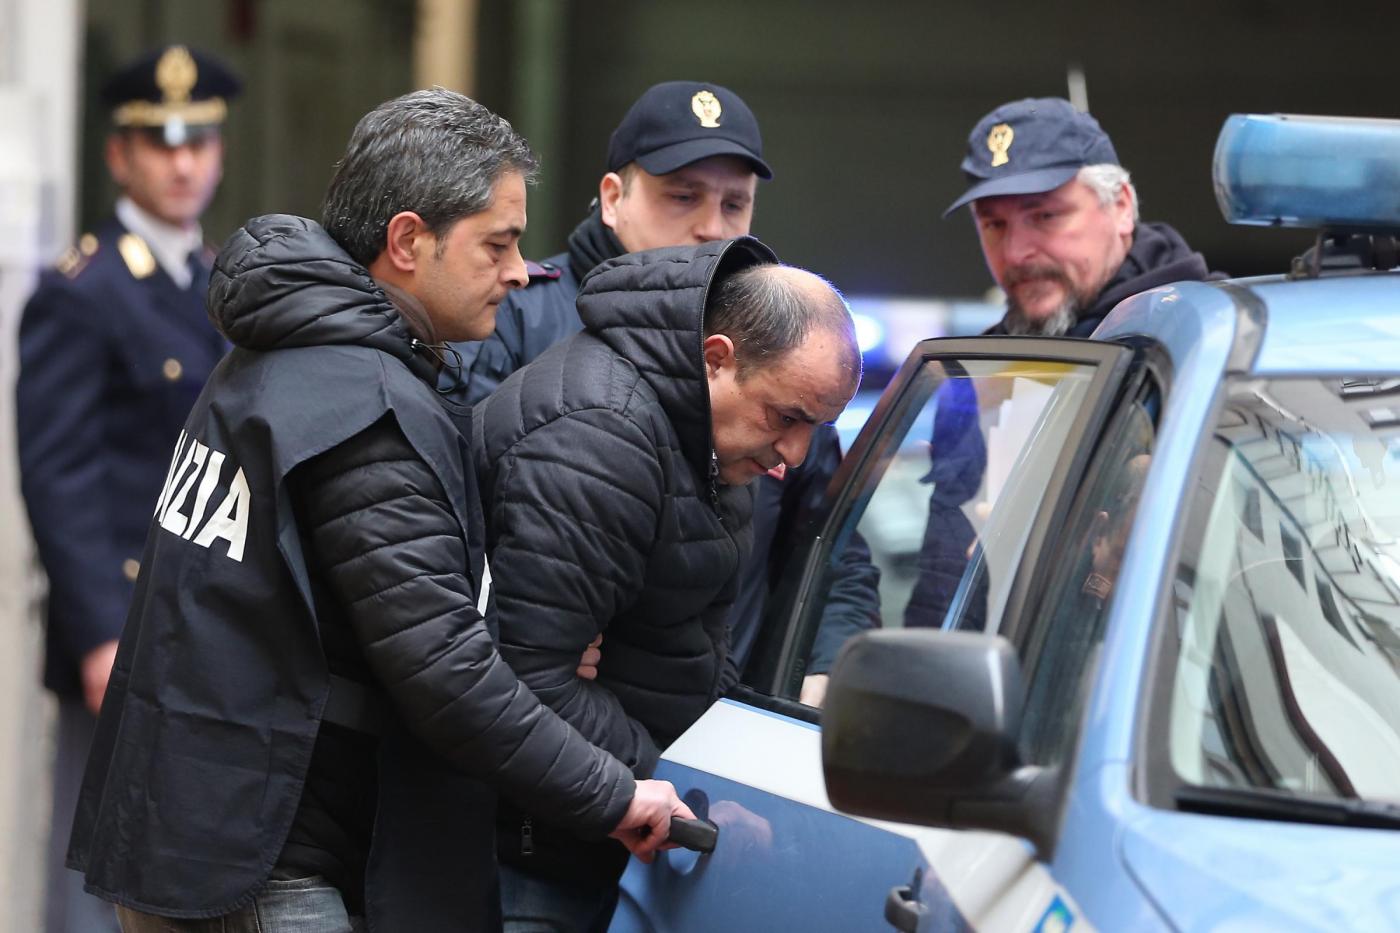 Napoli, uscita arresti operazione antidroga contro il clan Amato Pagano